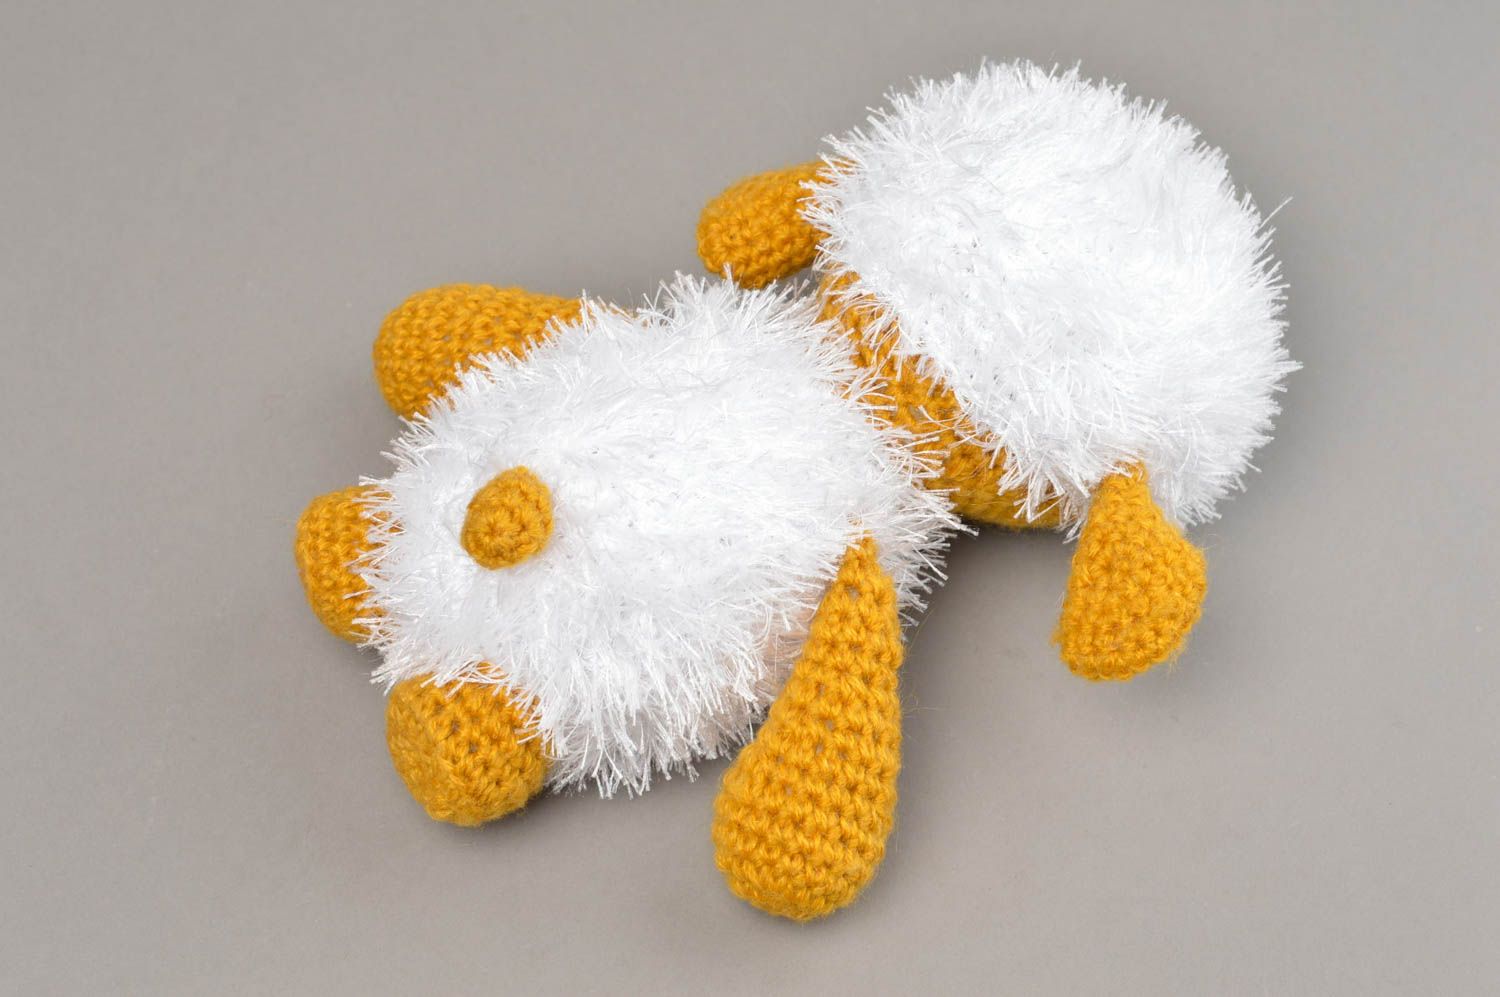 Авторская мягкая вязаная игрушка в виде белой космической овечки ручной работы фото 3